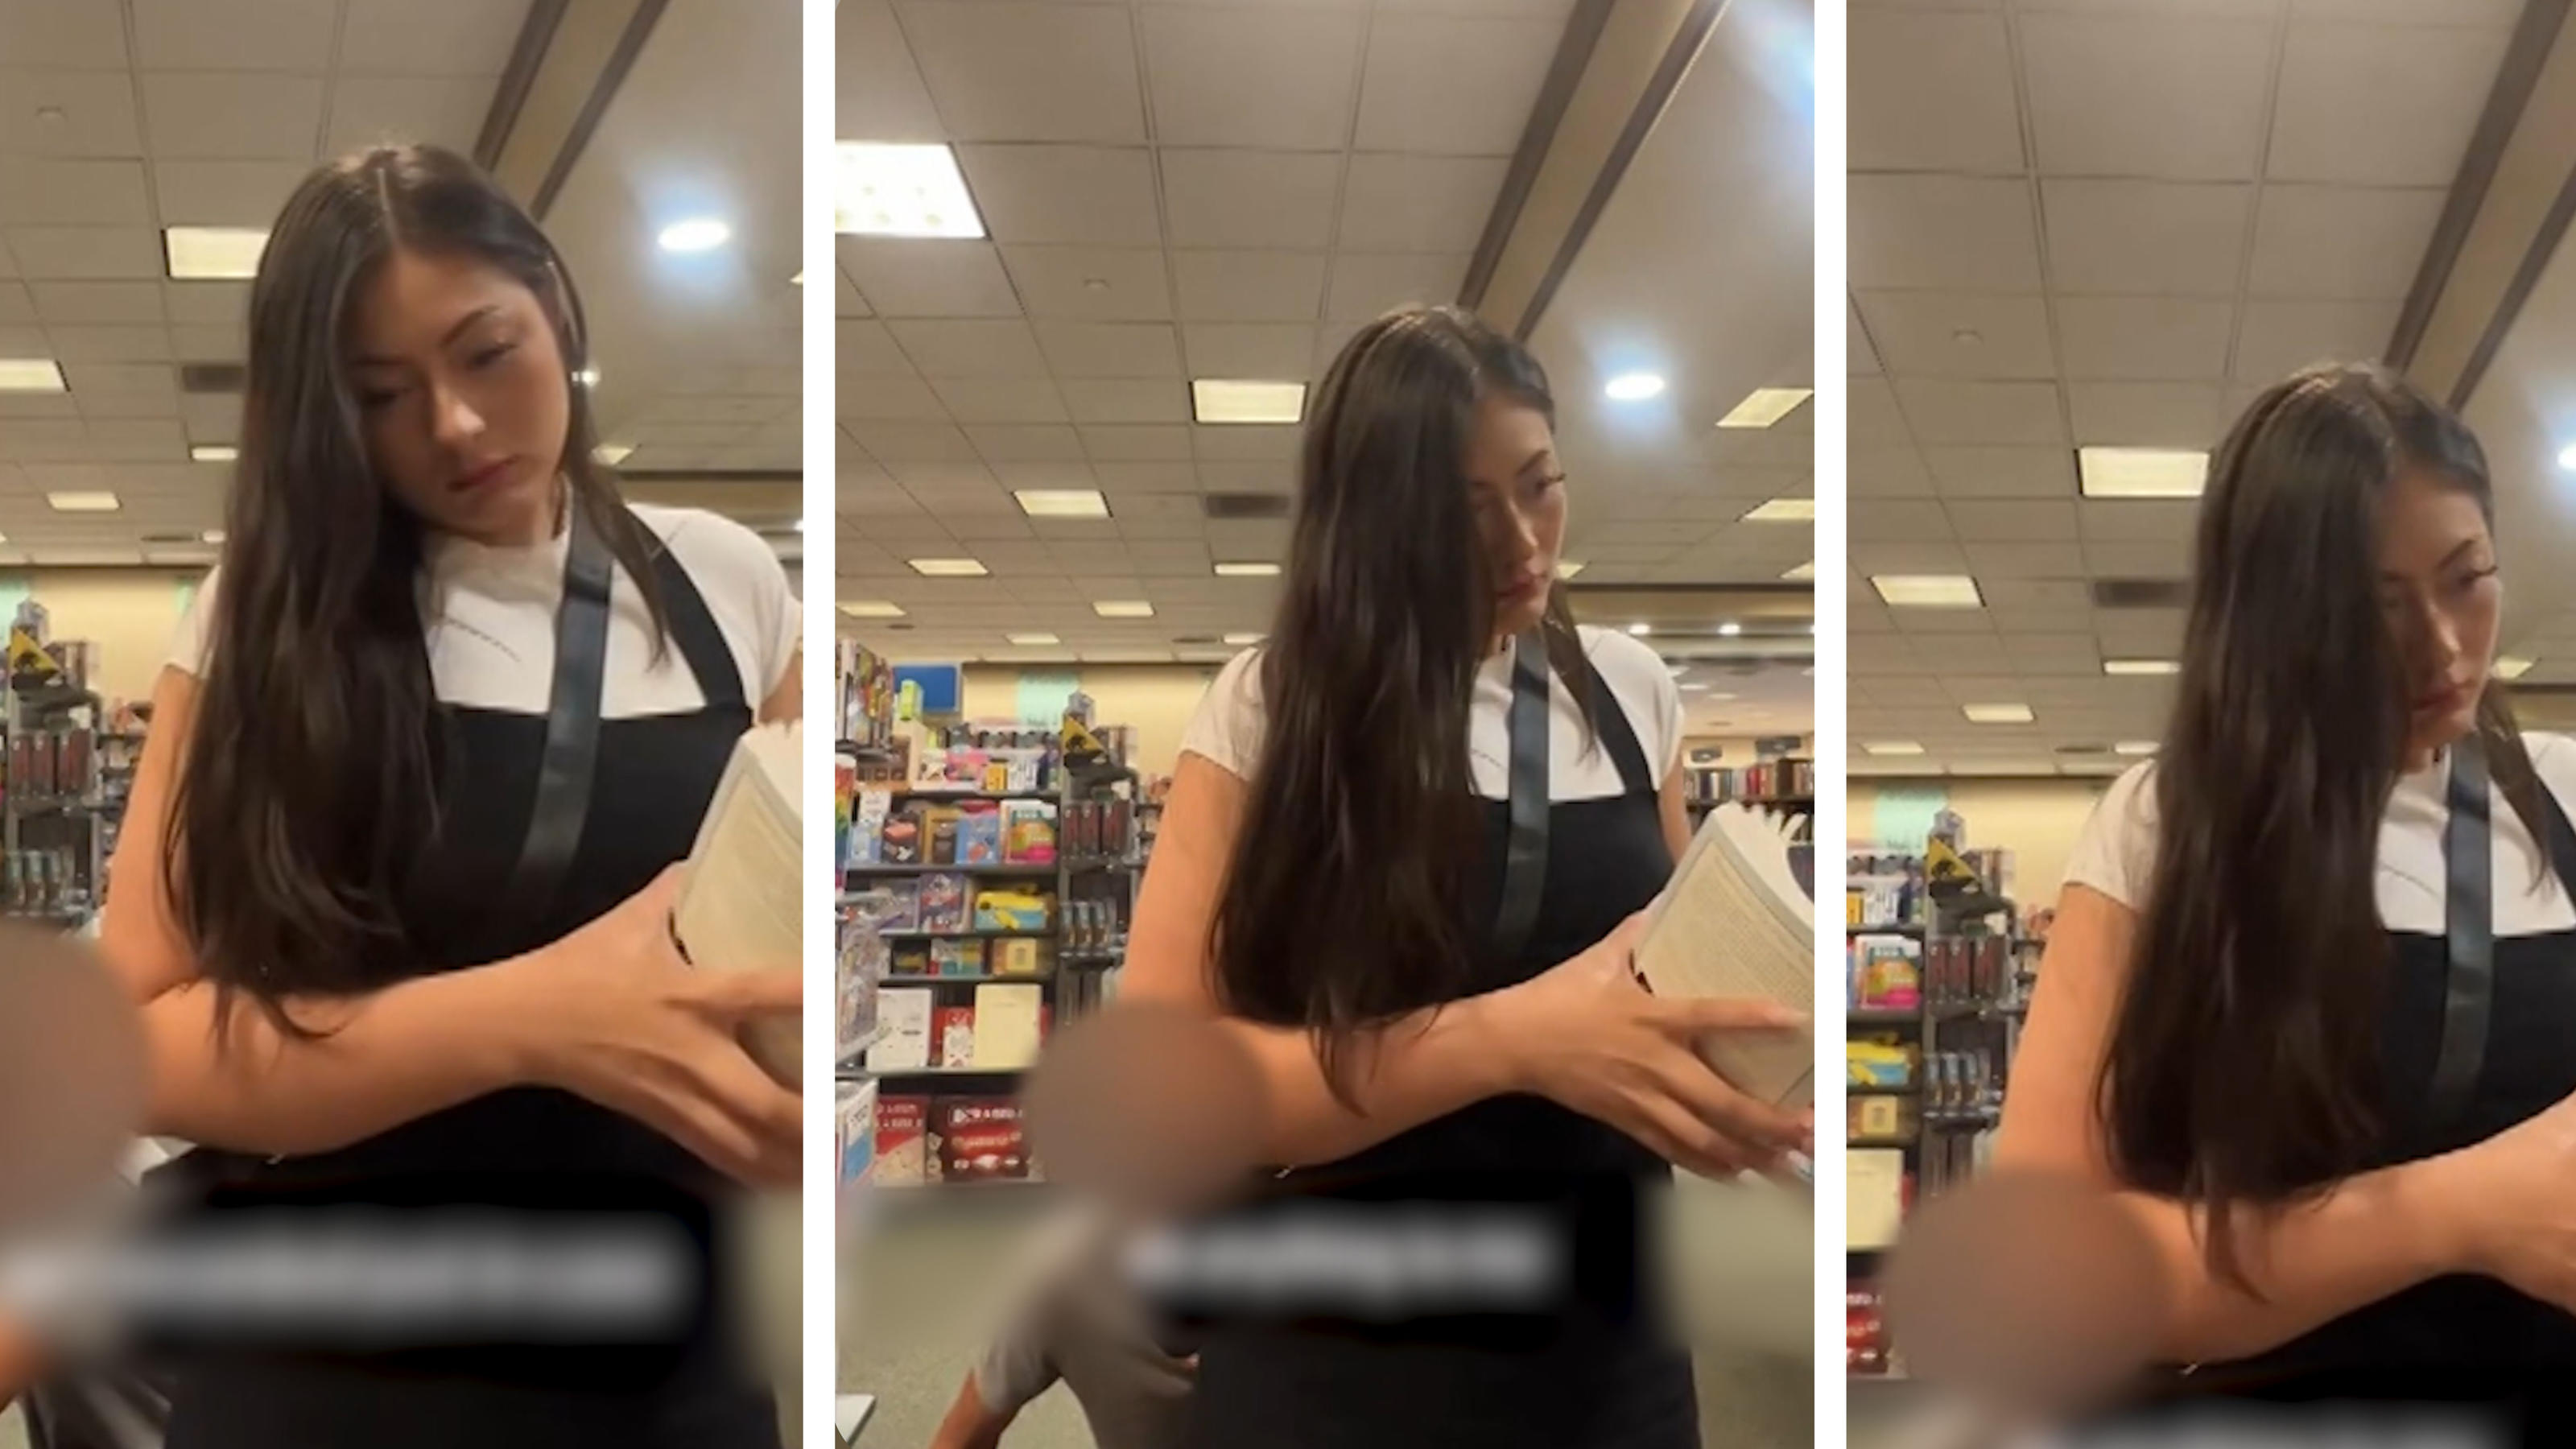 Mann schleicht sich in Buchhandlung an Frau heran Schnüffelt er ihr am Hintern?